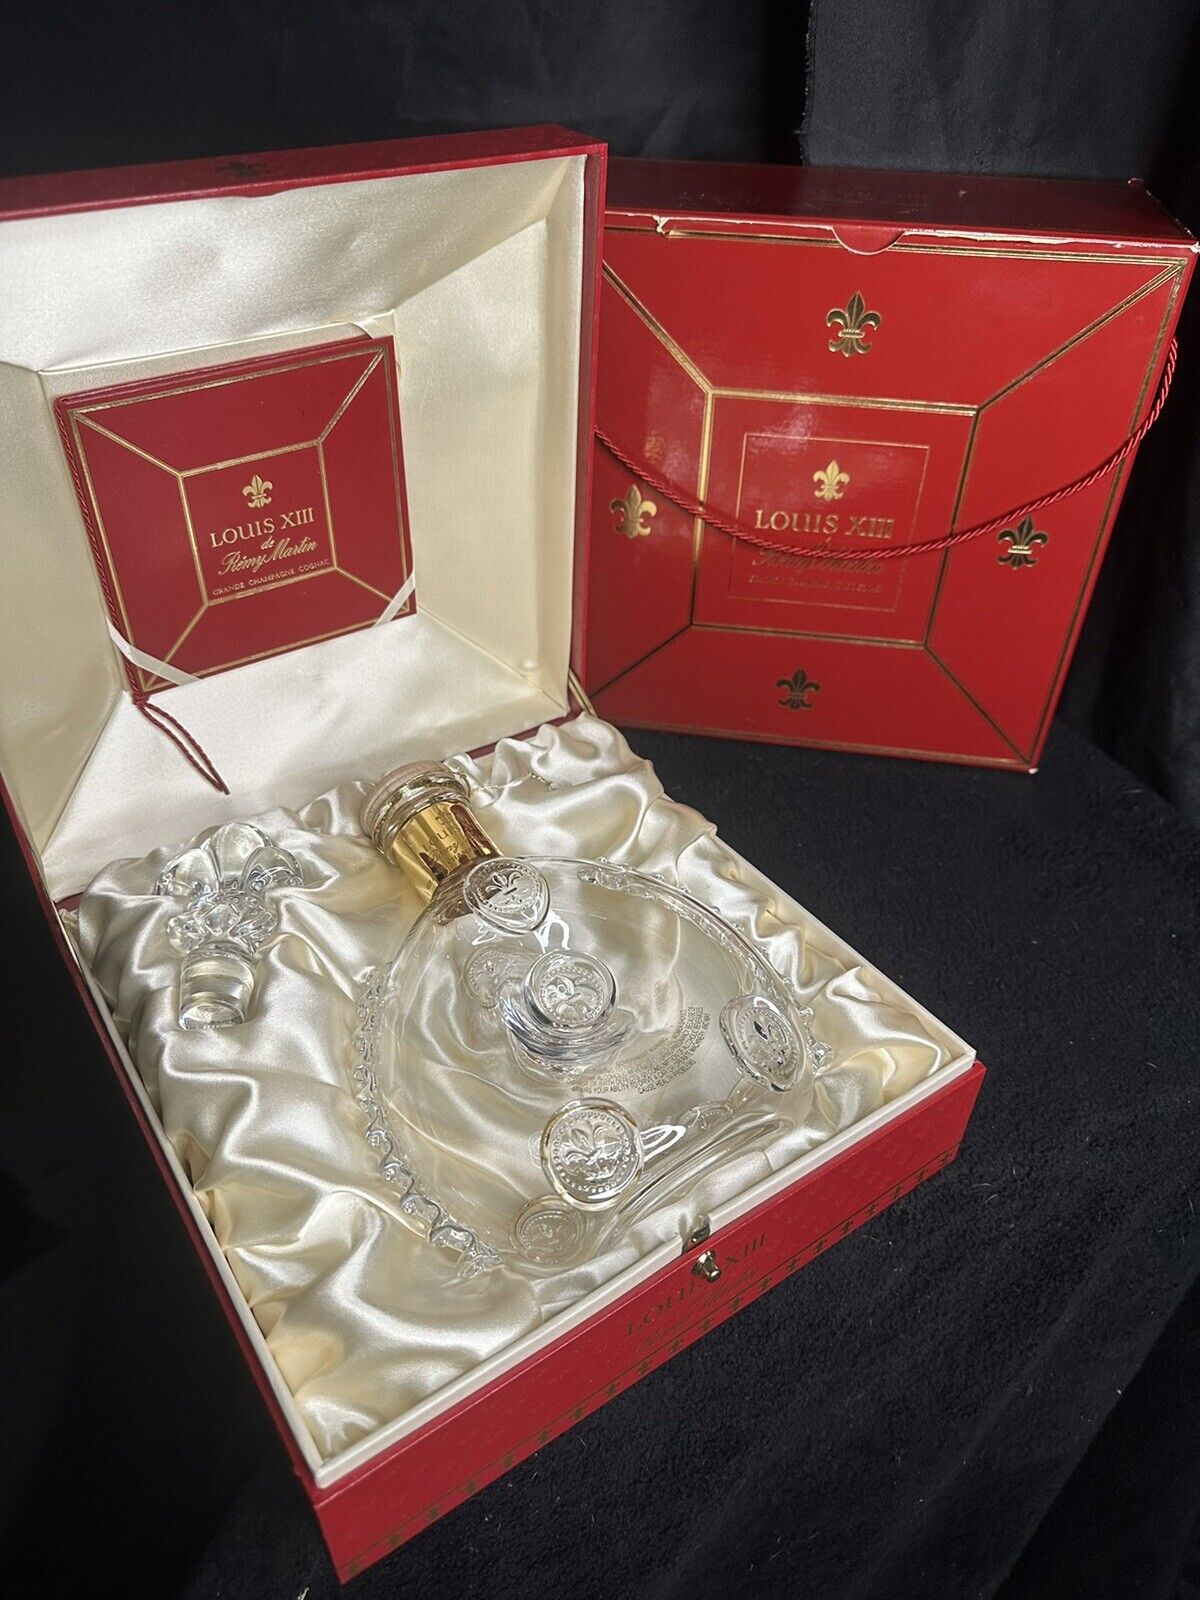 Remy Martin Louis XIII Cognac Baccarat Crystal Empty 750ml Bottle w/ Casket Box